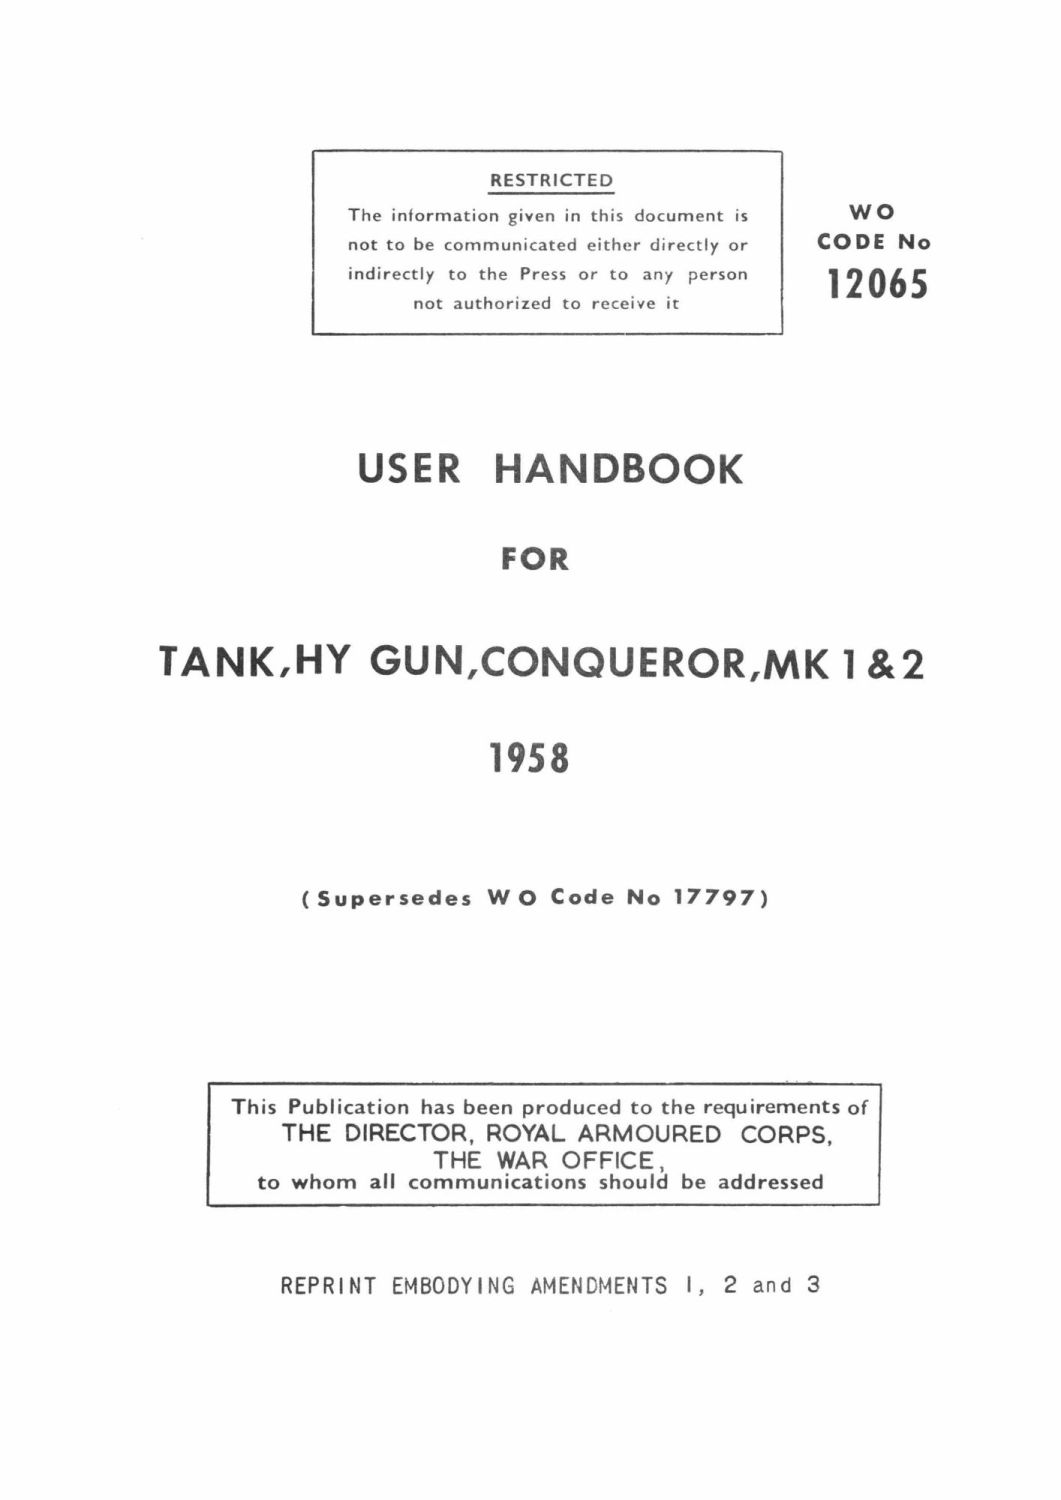 Conqueror Mks 1 & 2 User Handbook